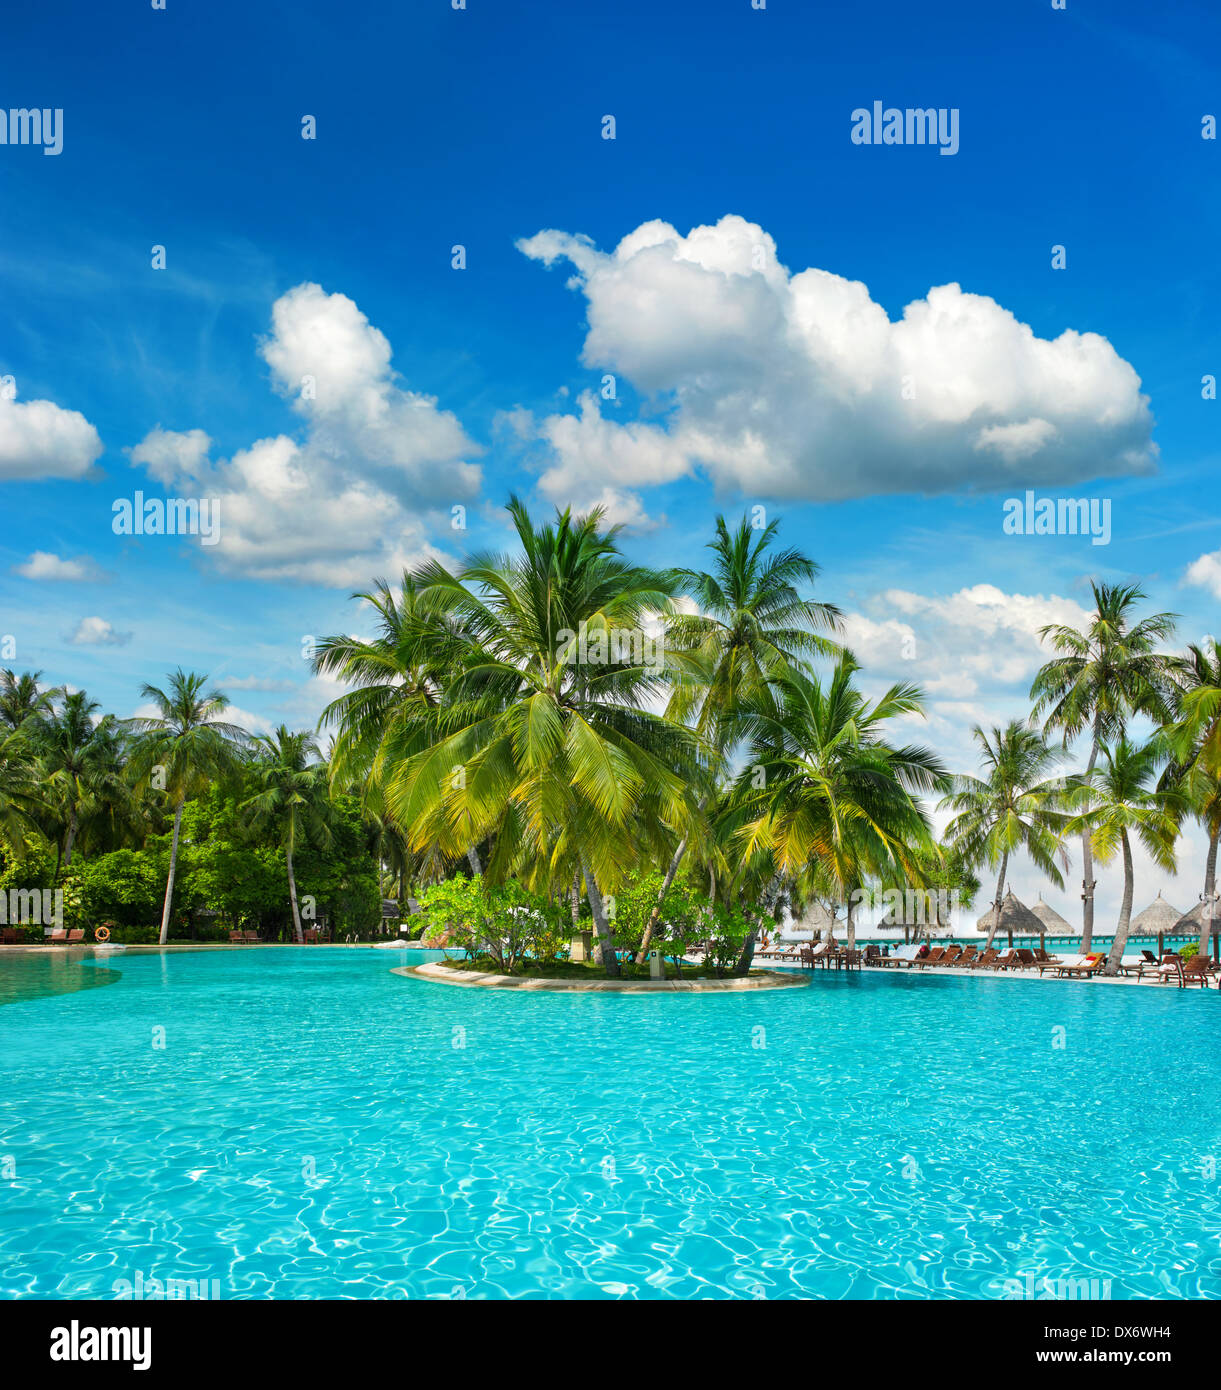 Piscine extérieure entourée de plantes tropicales luxuriantes et de palmiers sur blue cloudy sky Banque D'Images